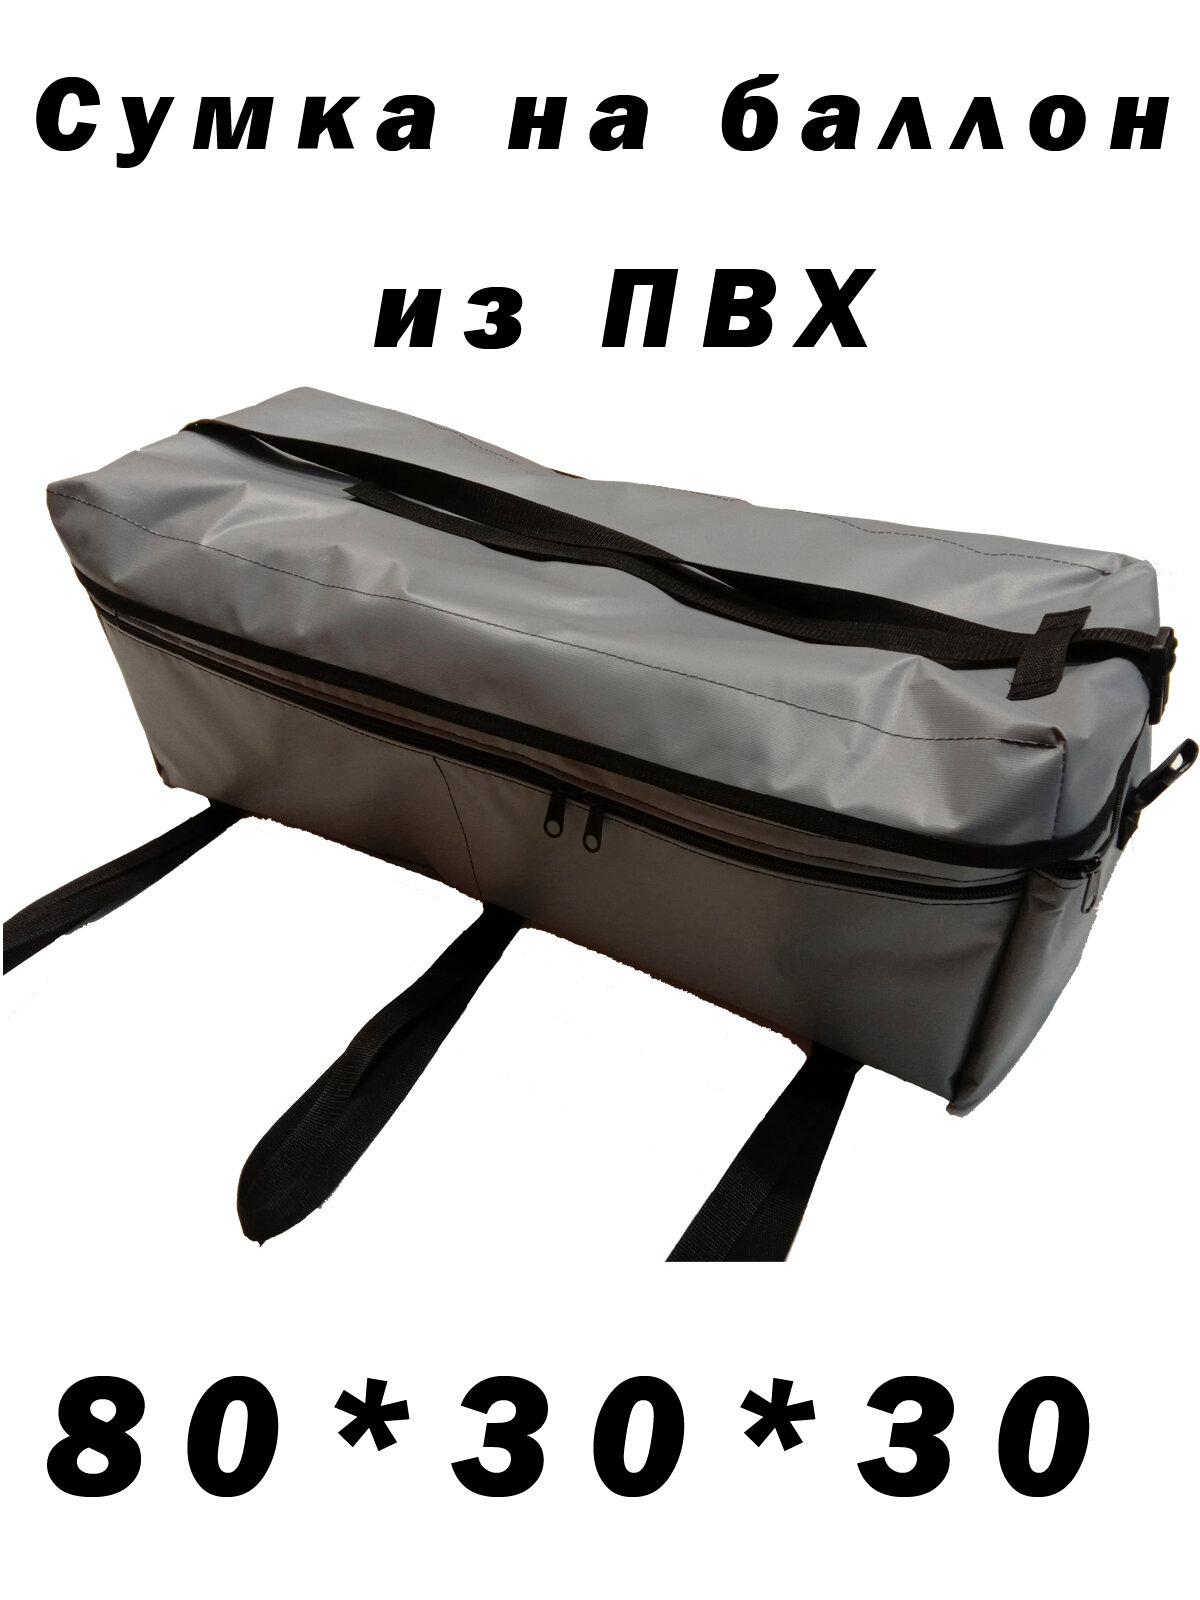 Бортовая сумка №1 (для лодки пвх: 80см * 30см * 30см)